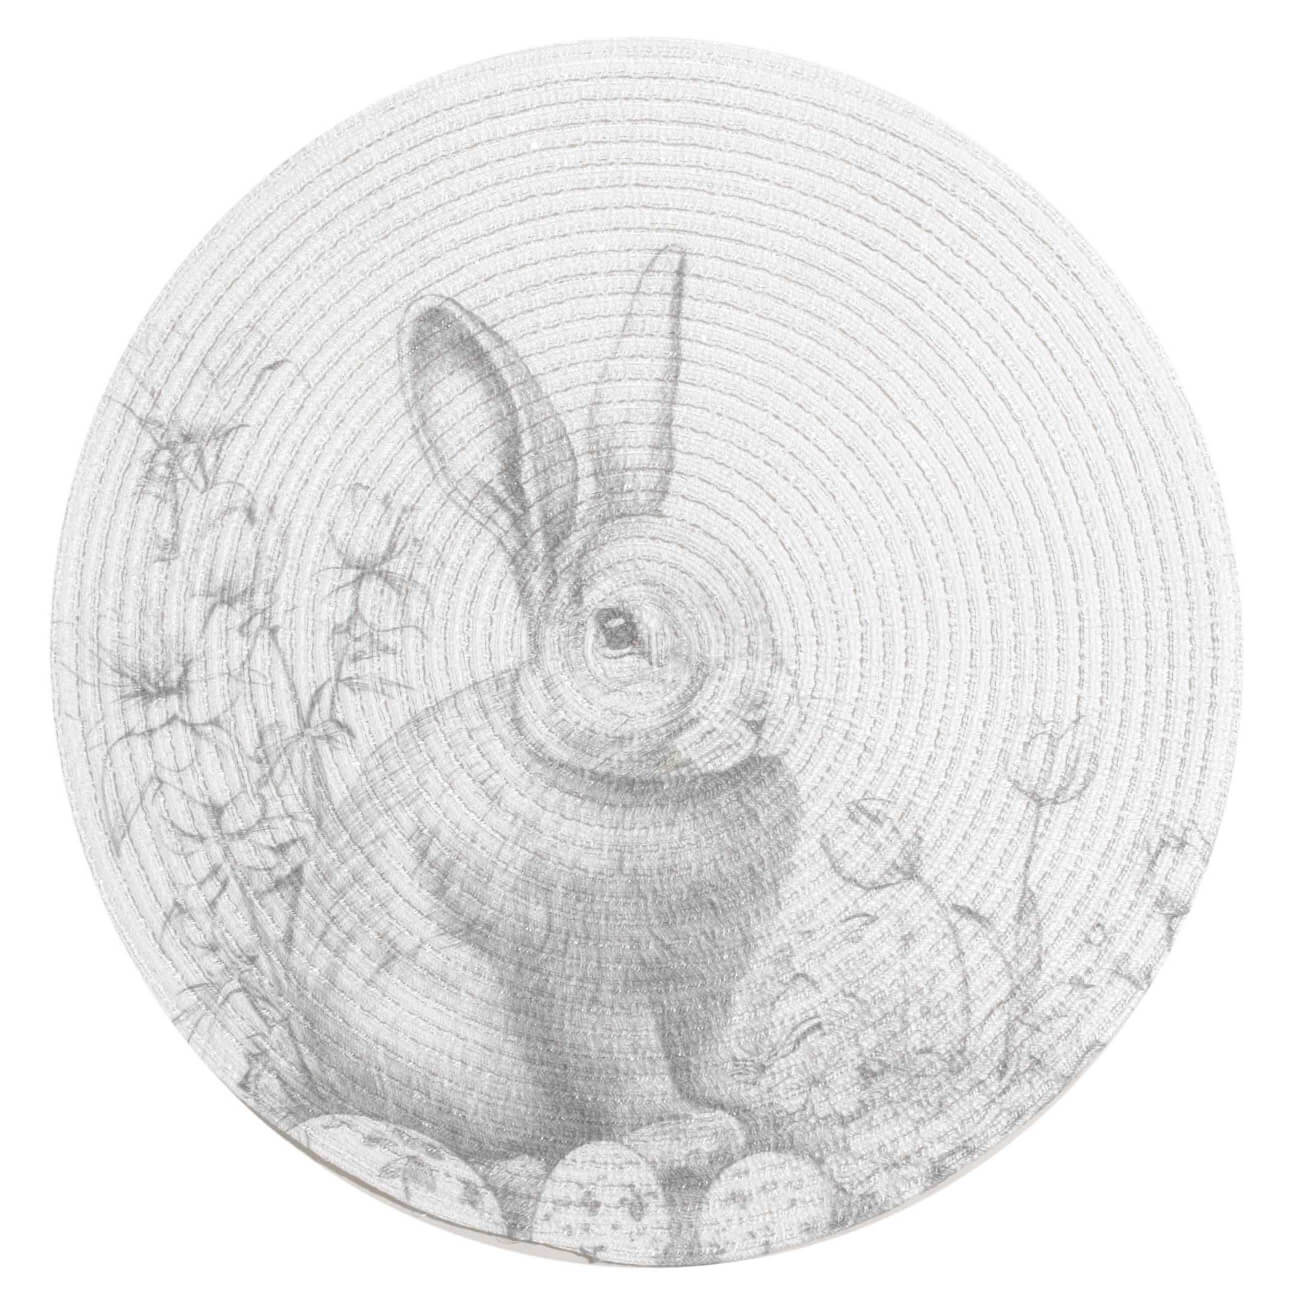 Салфетка под приборы, 38 см, полиэстер, круглая, белая, Графичный кролик, Rotary print изображение № 1